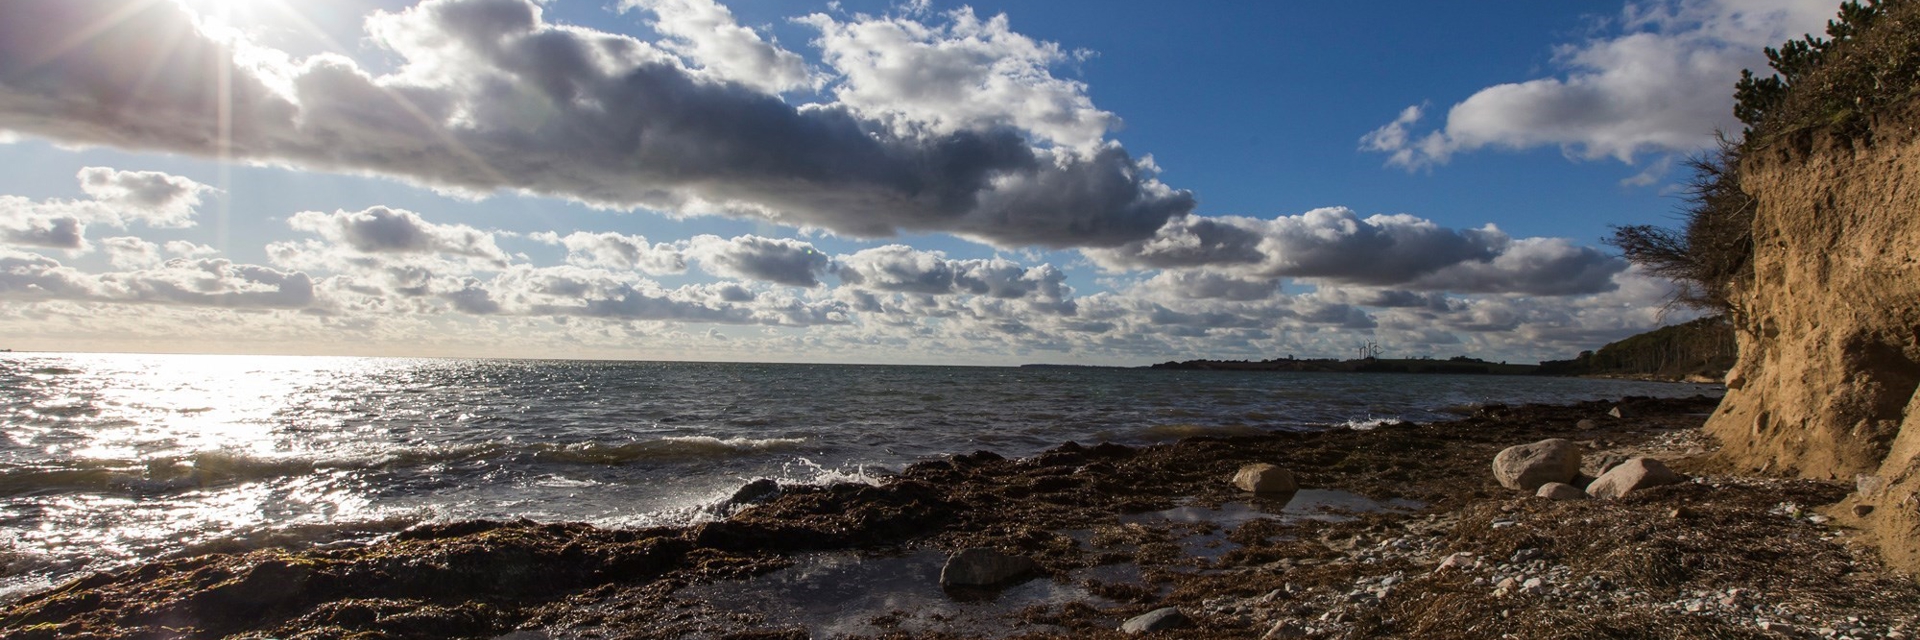 Solen skinner igennem et let skydække imens bølgerne slår ind på kysten ved Karrebæksminde